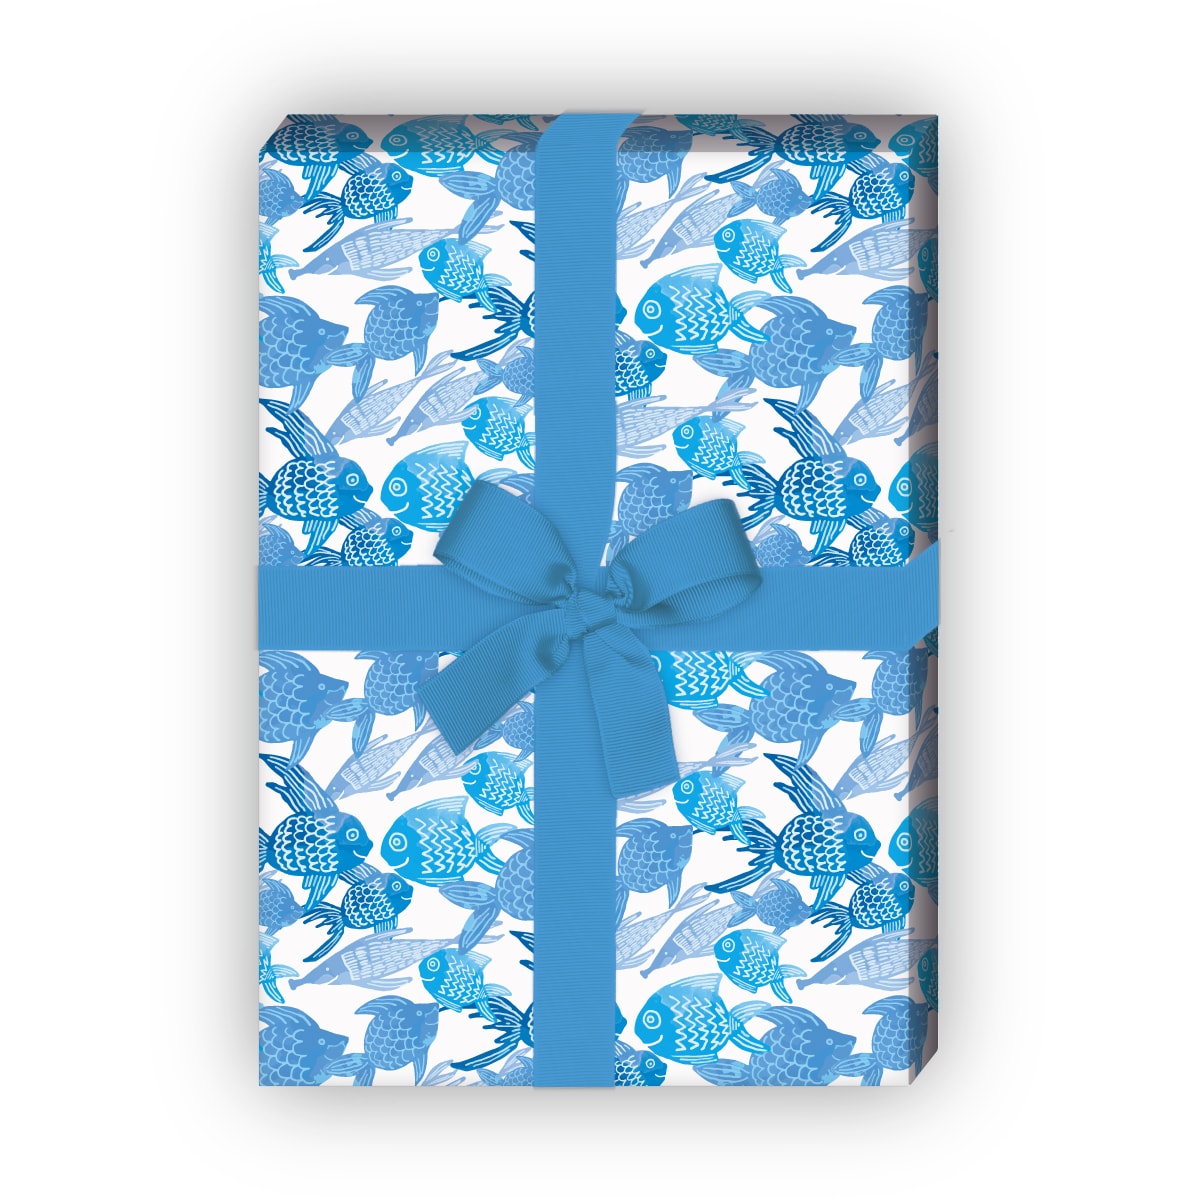 Kartenkaufrausch: Sommer Geschenkpapier mit erfrischenden aus unserer Tier Papeterie in blau